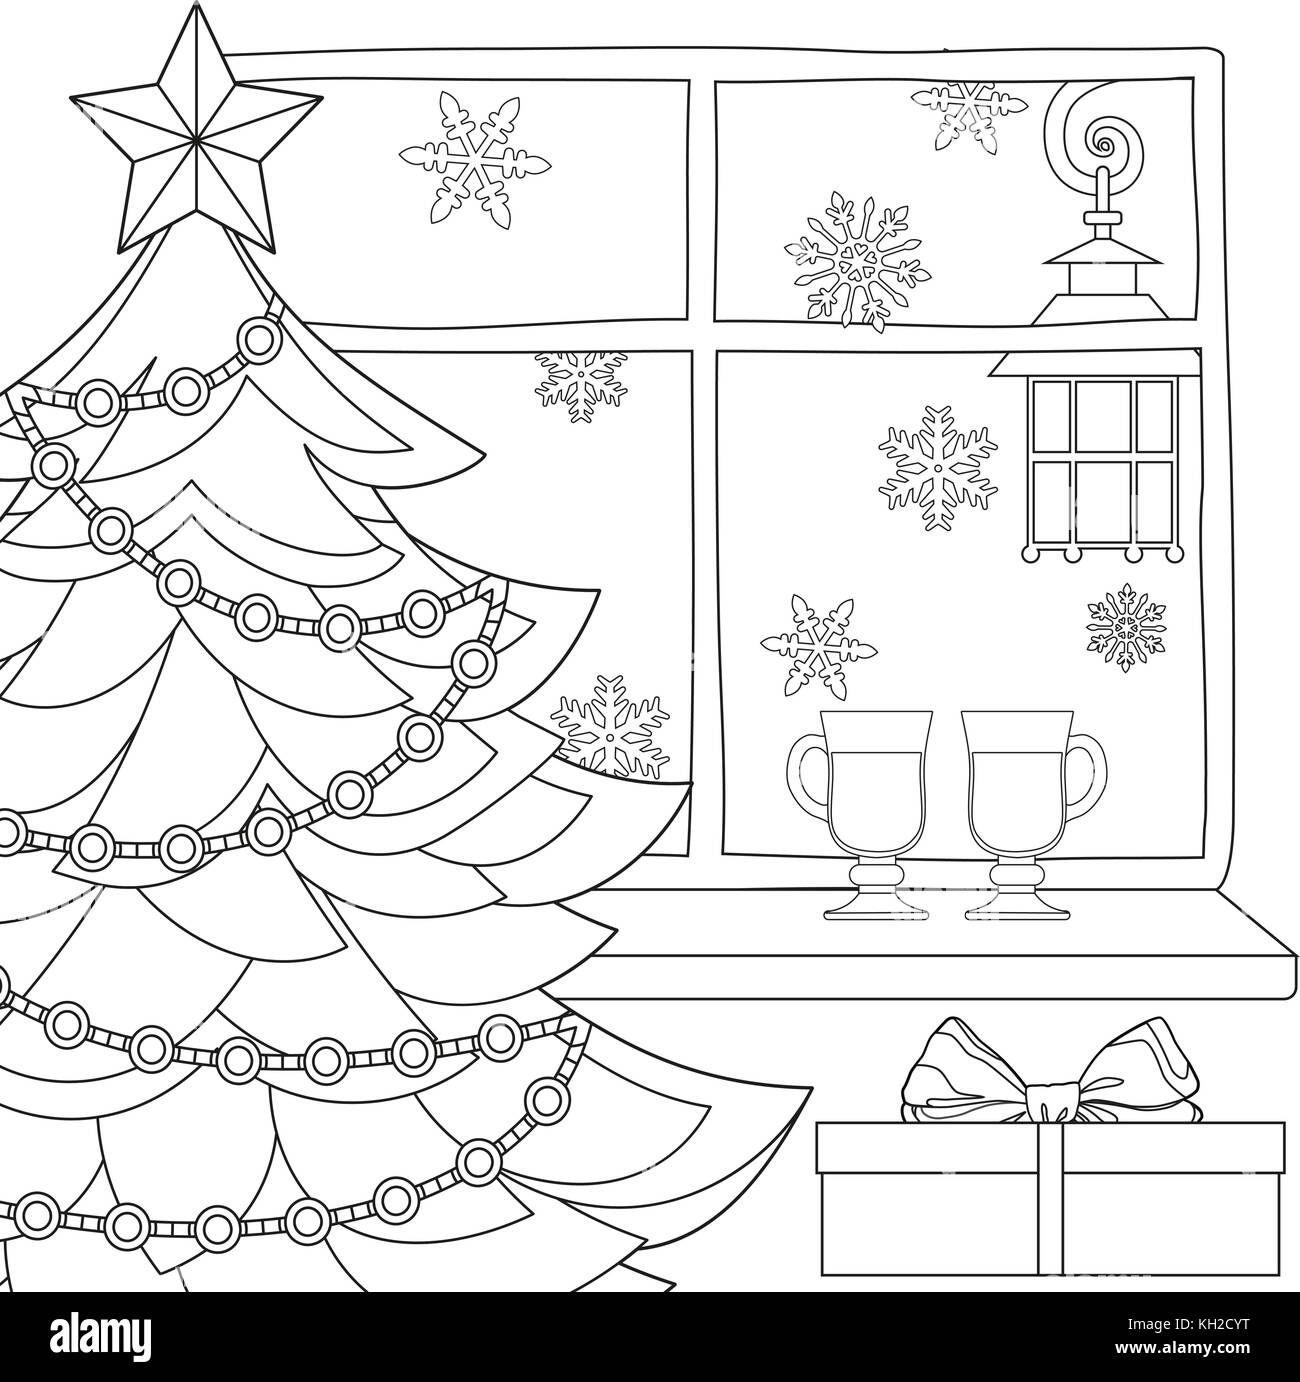 Tema Natale poster con albero di natale, stella, ghirlanda di luce, i fiocchi di neve, vin brulé e street lanterna. Illustrazione Vettoriale